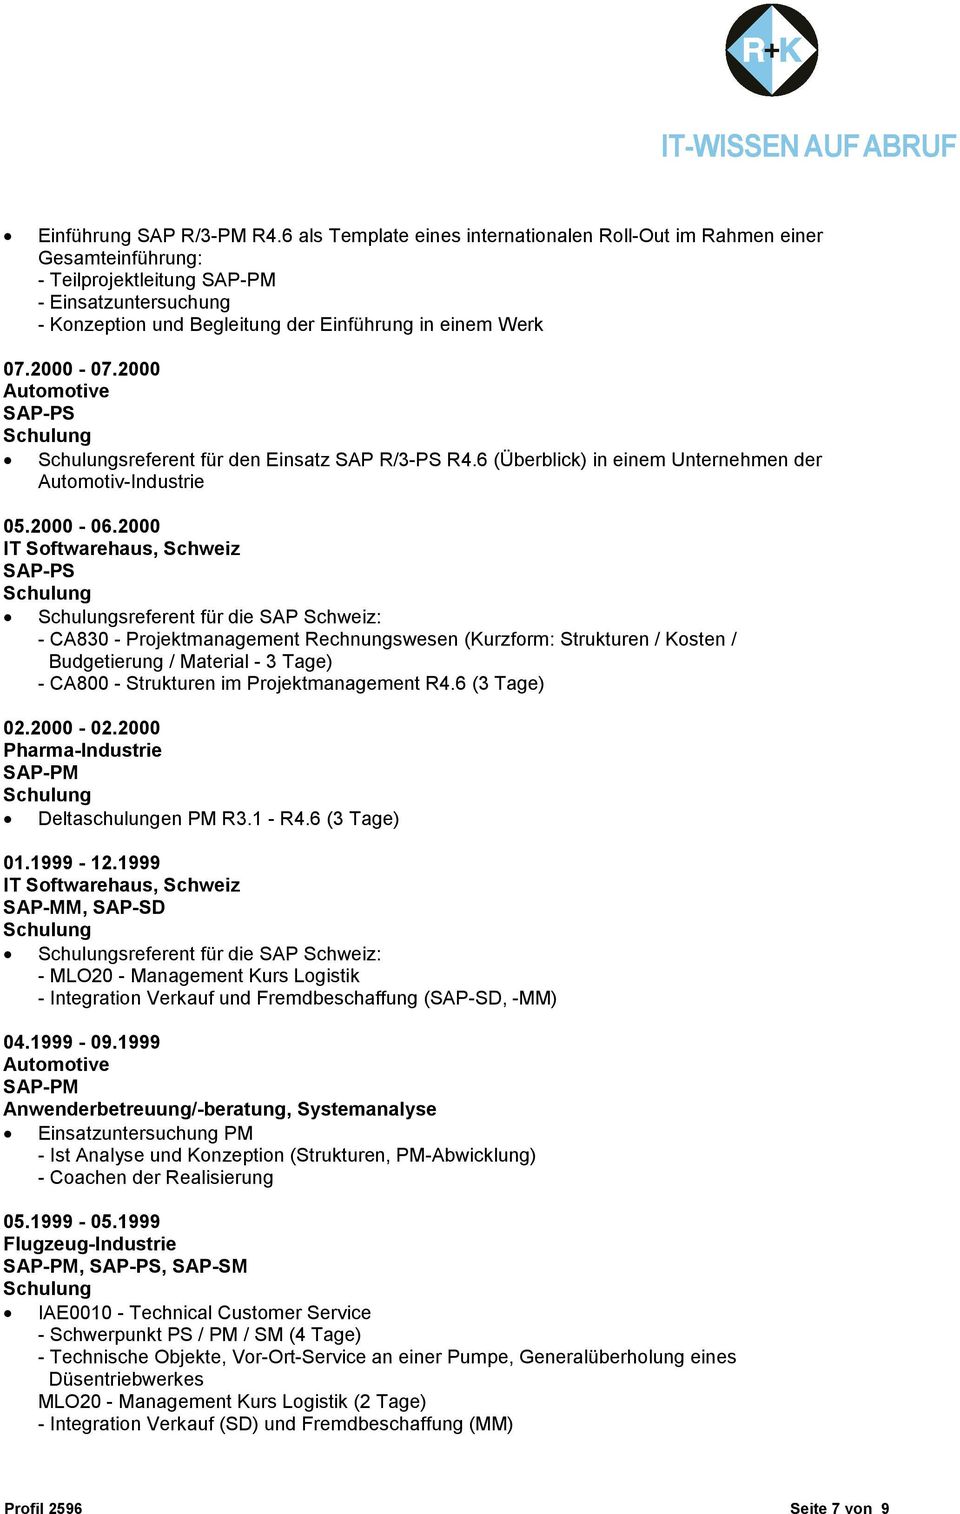 2000 sreferent für den Einsatz SAP R/3-PS R4.6 (Überblick) in einem Unternehmen der Automotiv-Industrie 05.2000-06.